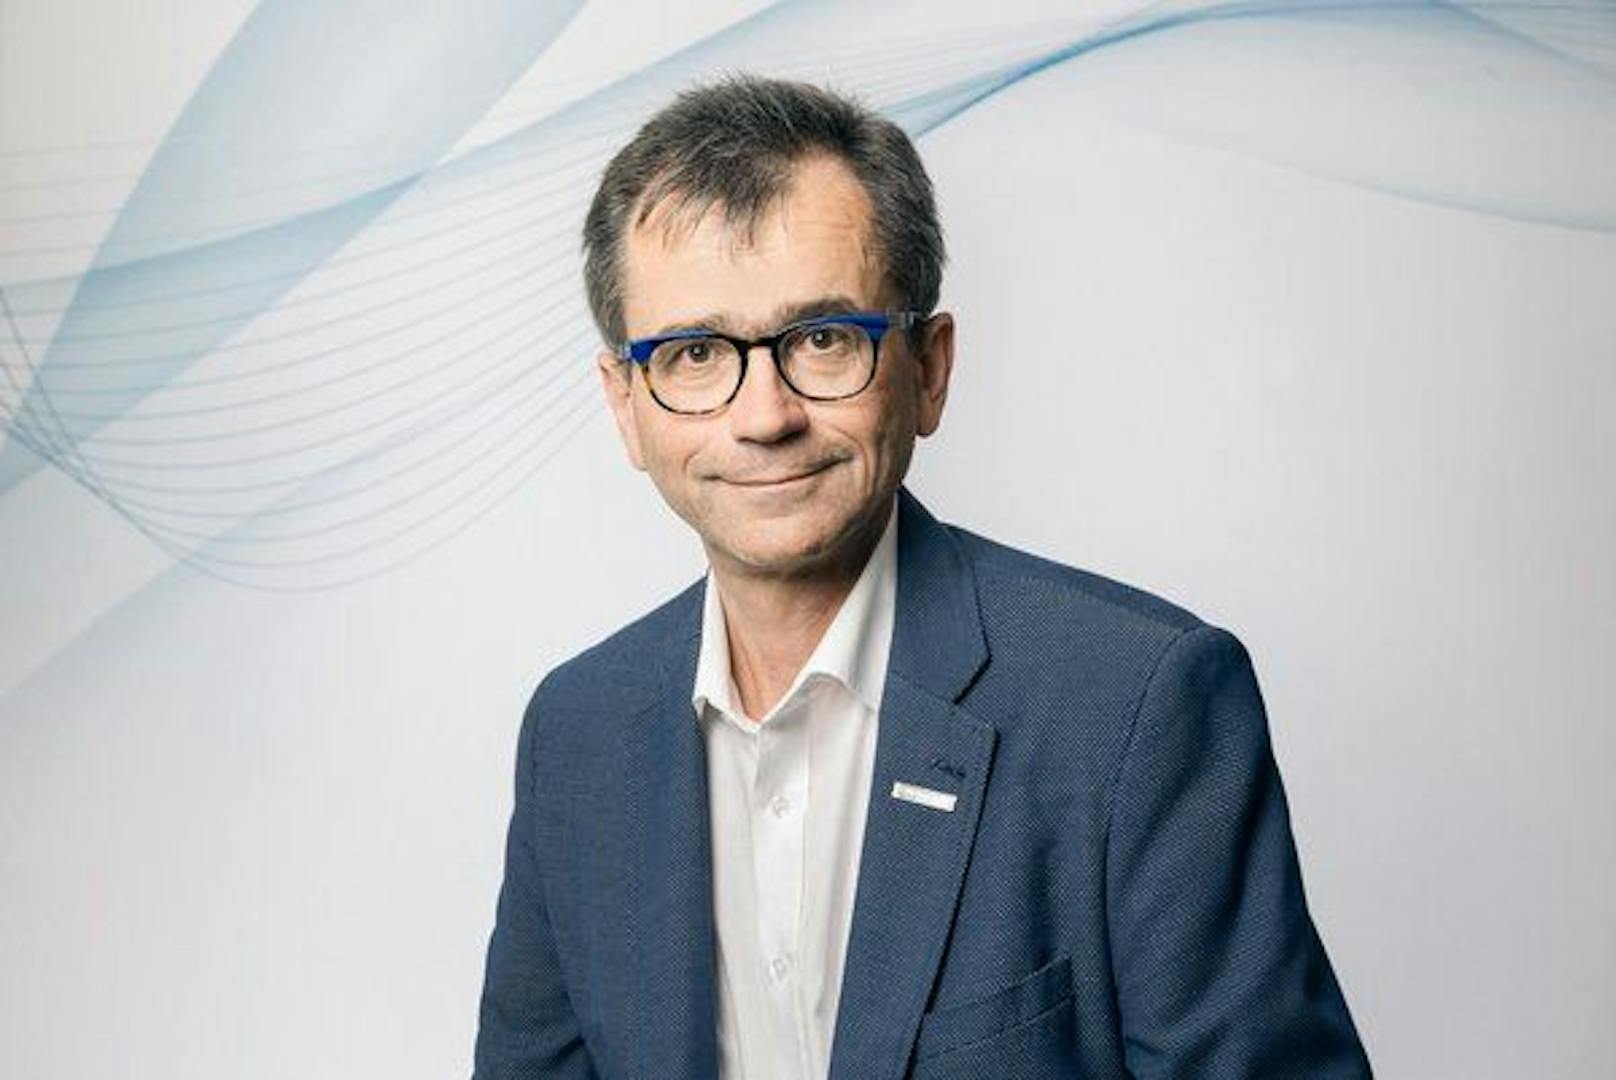 Peter Niedermoser, Ärztekammer-Präsident in OÖ, ist zufrieden mit dem Wahlergebnis.